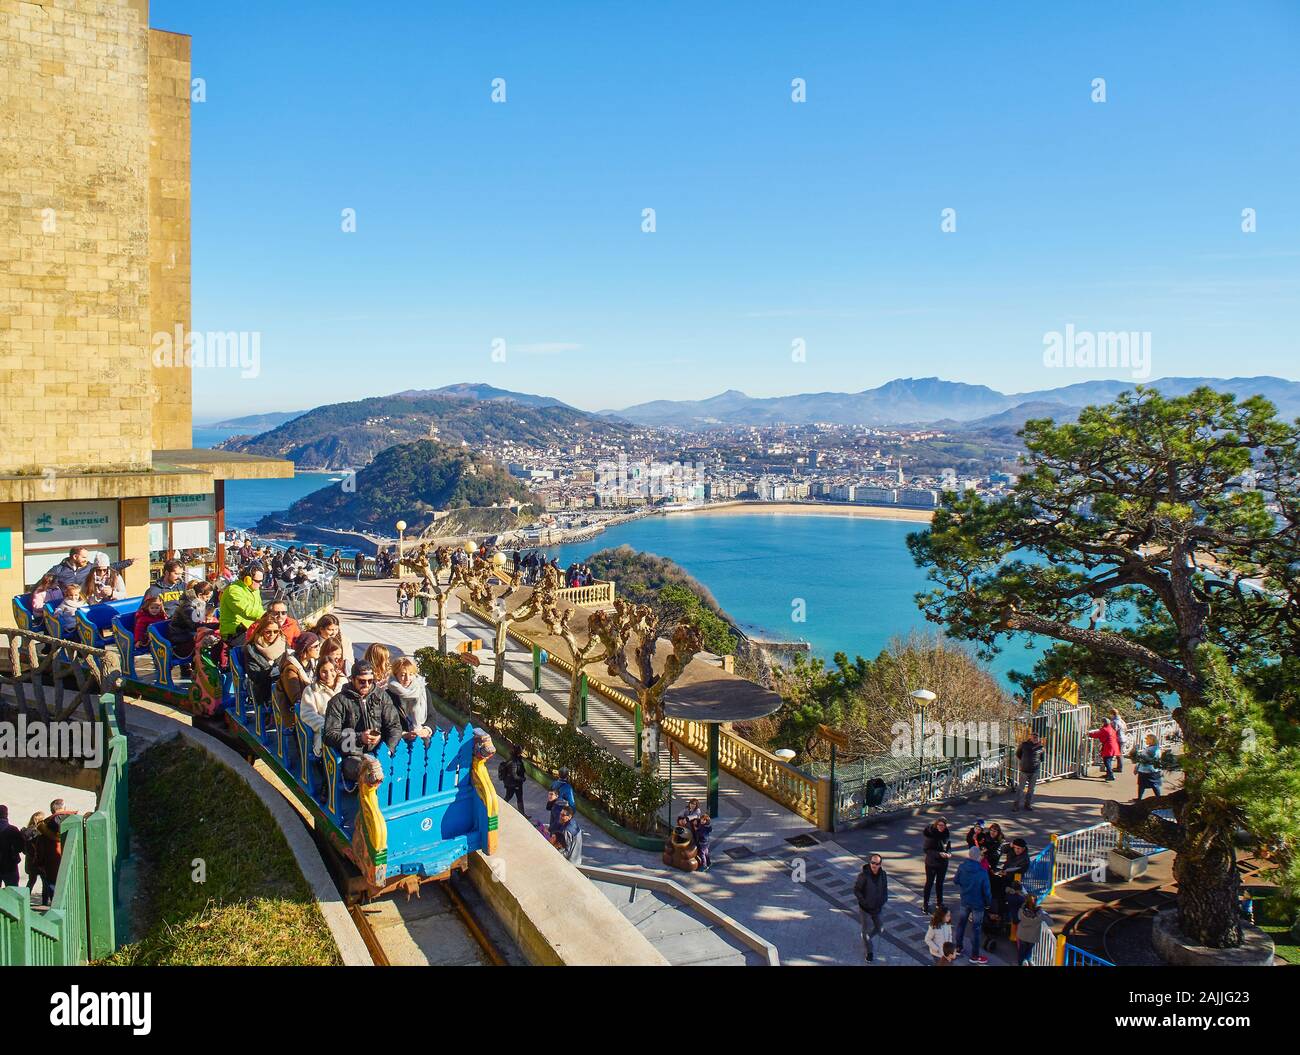 Les touristes sur les montagnes russes de la Monte Igueldo Parc d'attractions avec la baie de La Concha de San Sebastian dans l'arrière-plan, Pays Basque, Espagne. Banque D'Images